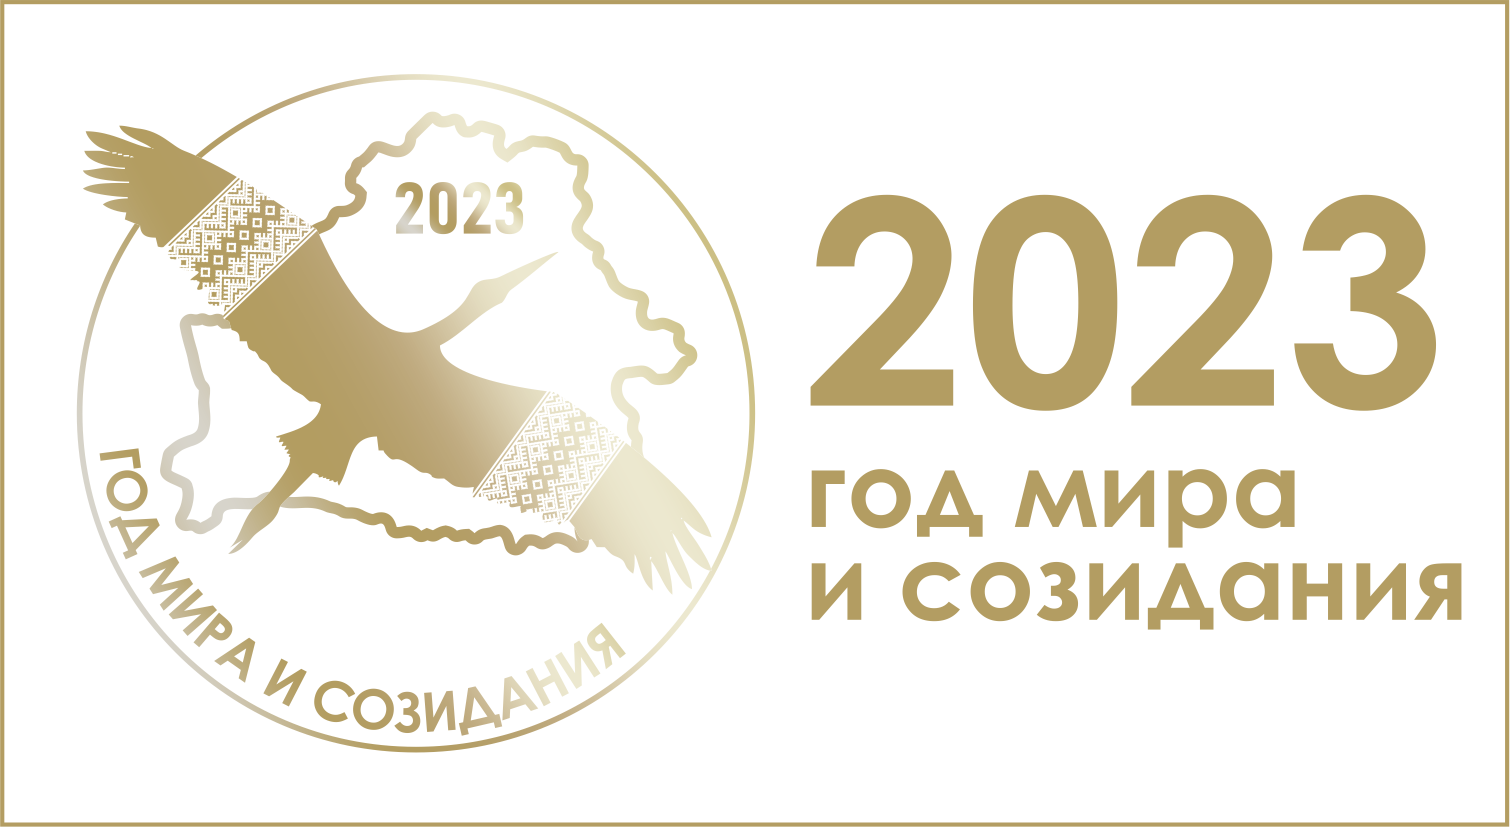 2022-ru-opt